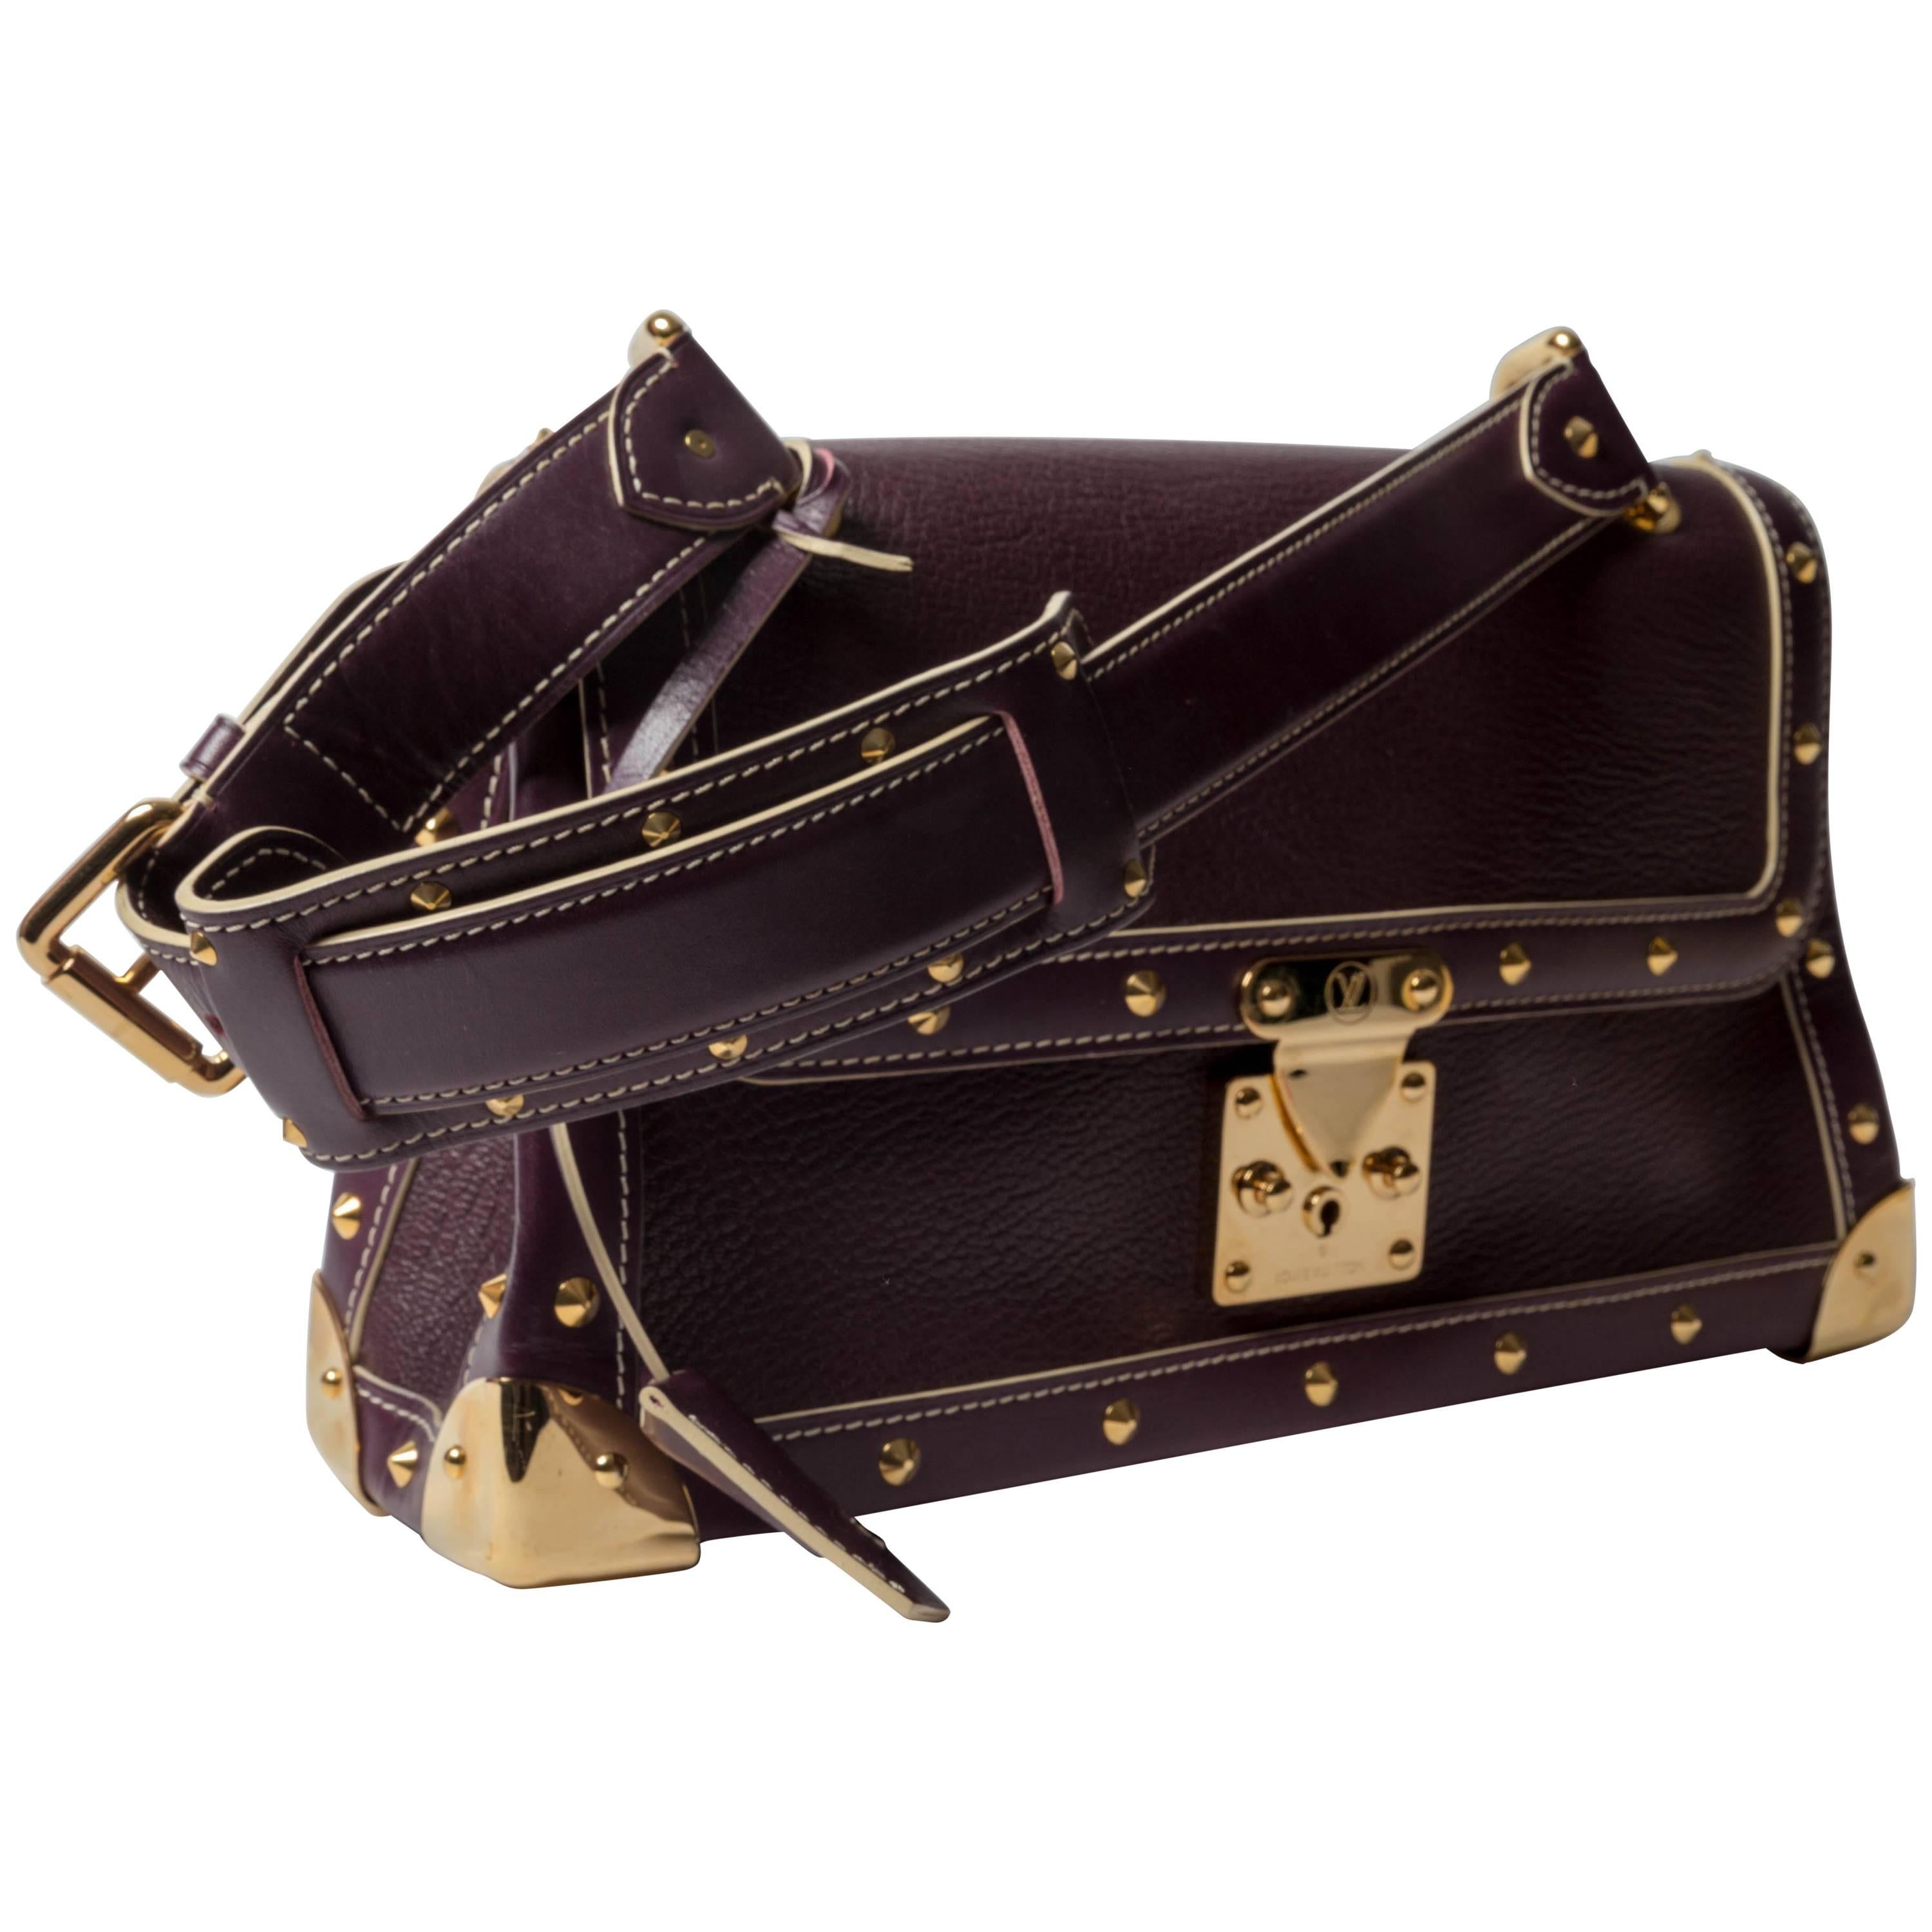 Louis Vuitton Talentueux Handbag 331795